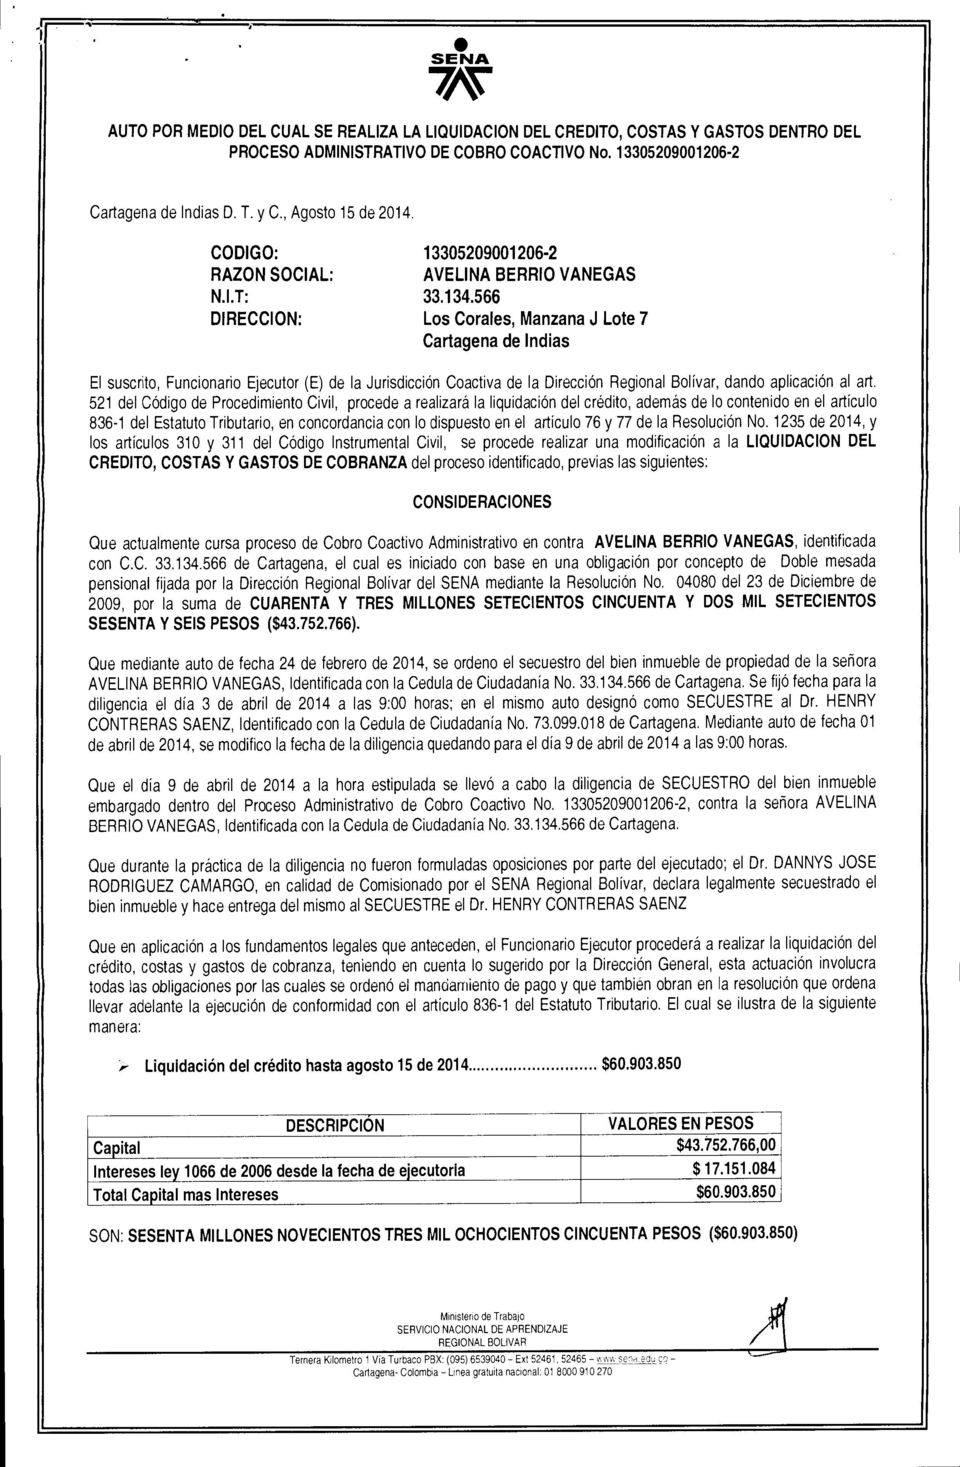 566 DIRECCION: Los Corales, Manzana J Lote 7 Cartagena de Indias El suscrito, Funcionario Ejecutor (E) de la Jurisdicci6n Coactiva de la Direccion Regional Bolivar, dando aplicacion al art.